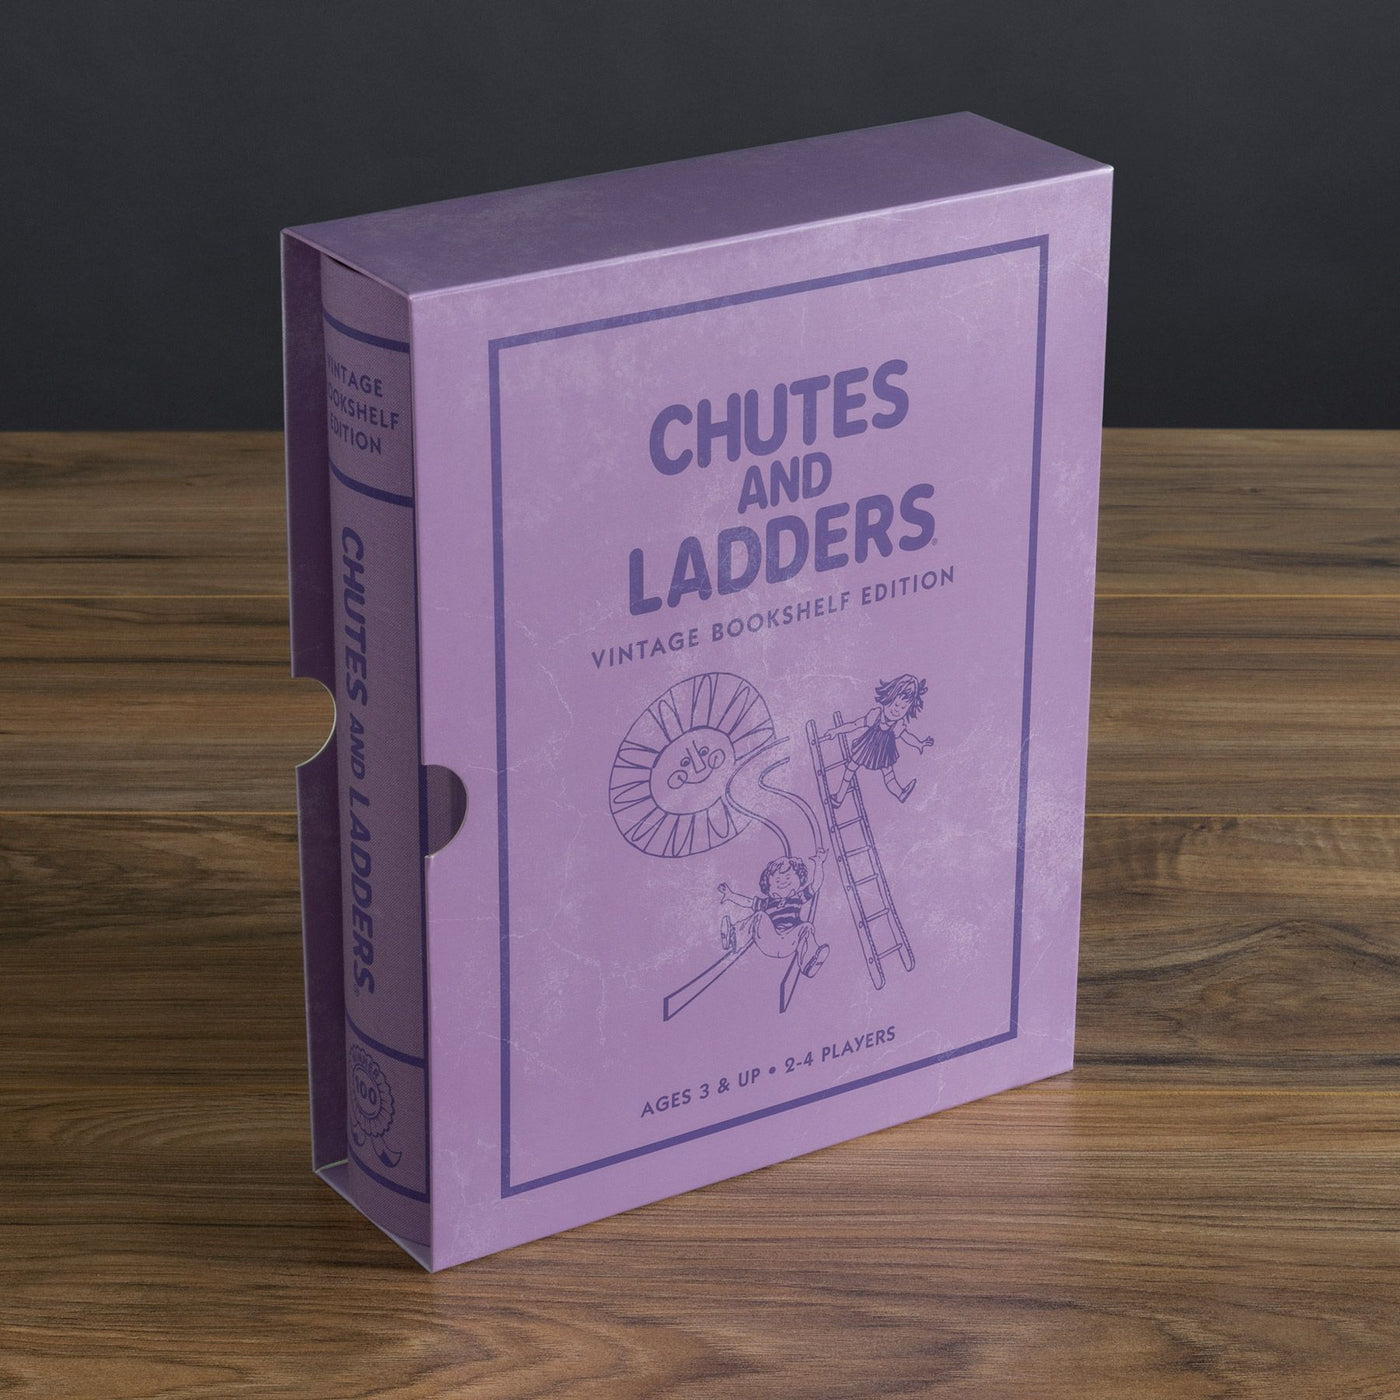 Chutes & Ladders Vintage Bookshelf Edition